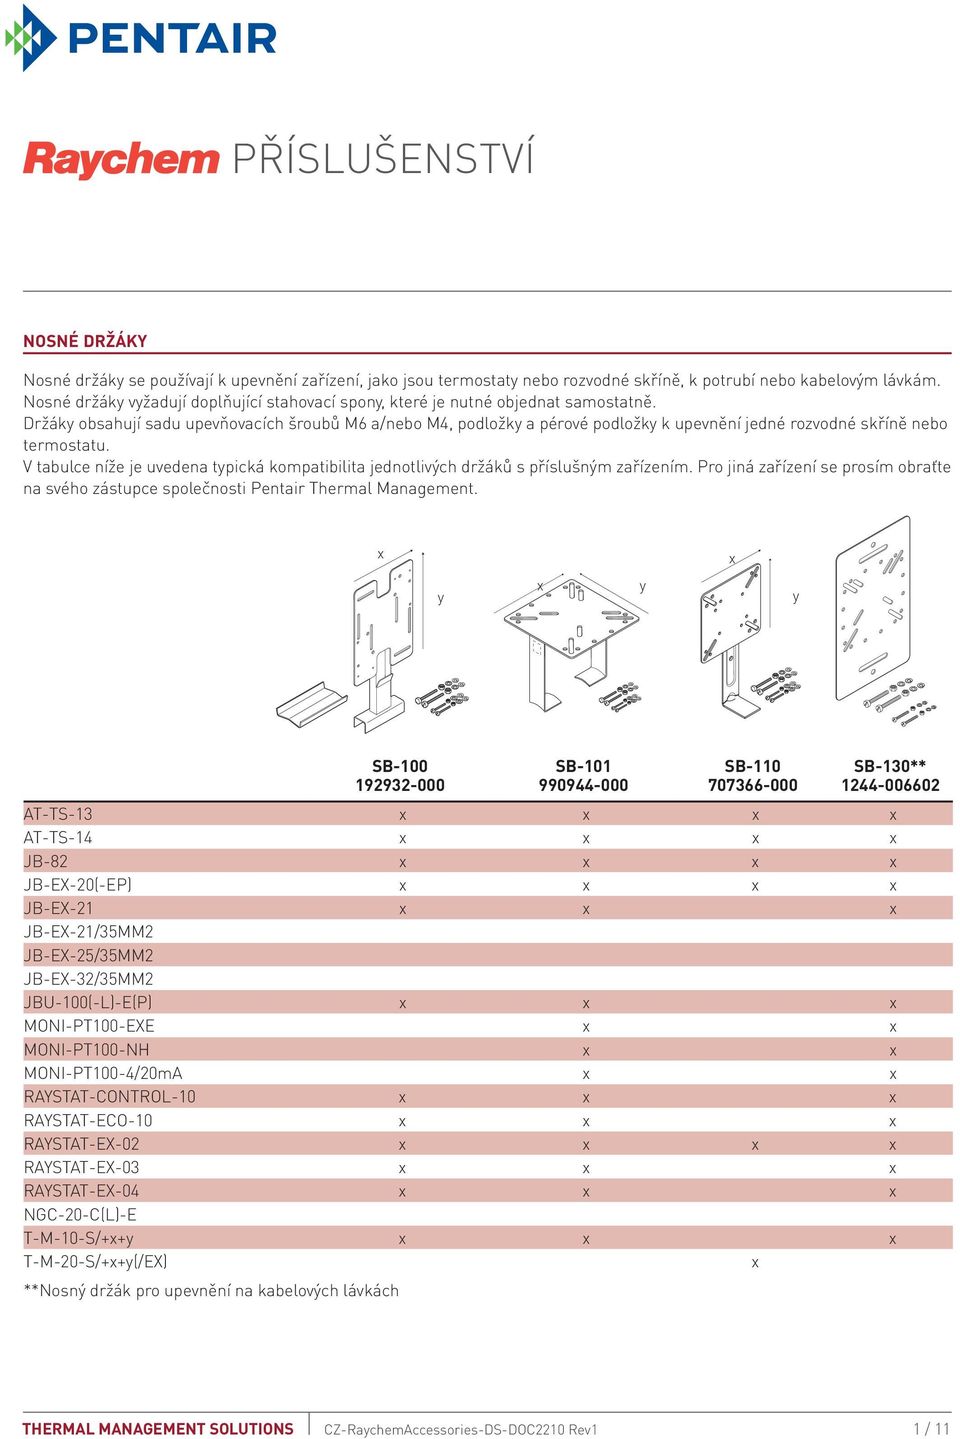 Držák obsahují sadu upevňovacích šroubů M6 a/nebo M4, podložk a pérové podložk k upevnění jedné rozvodné skříně nebo termostatu.